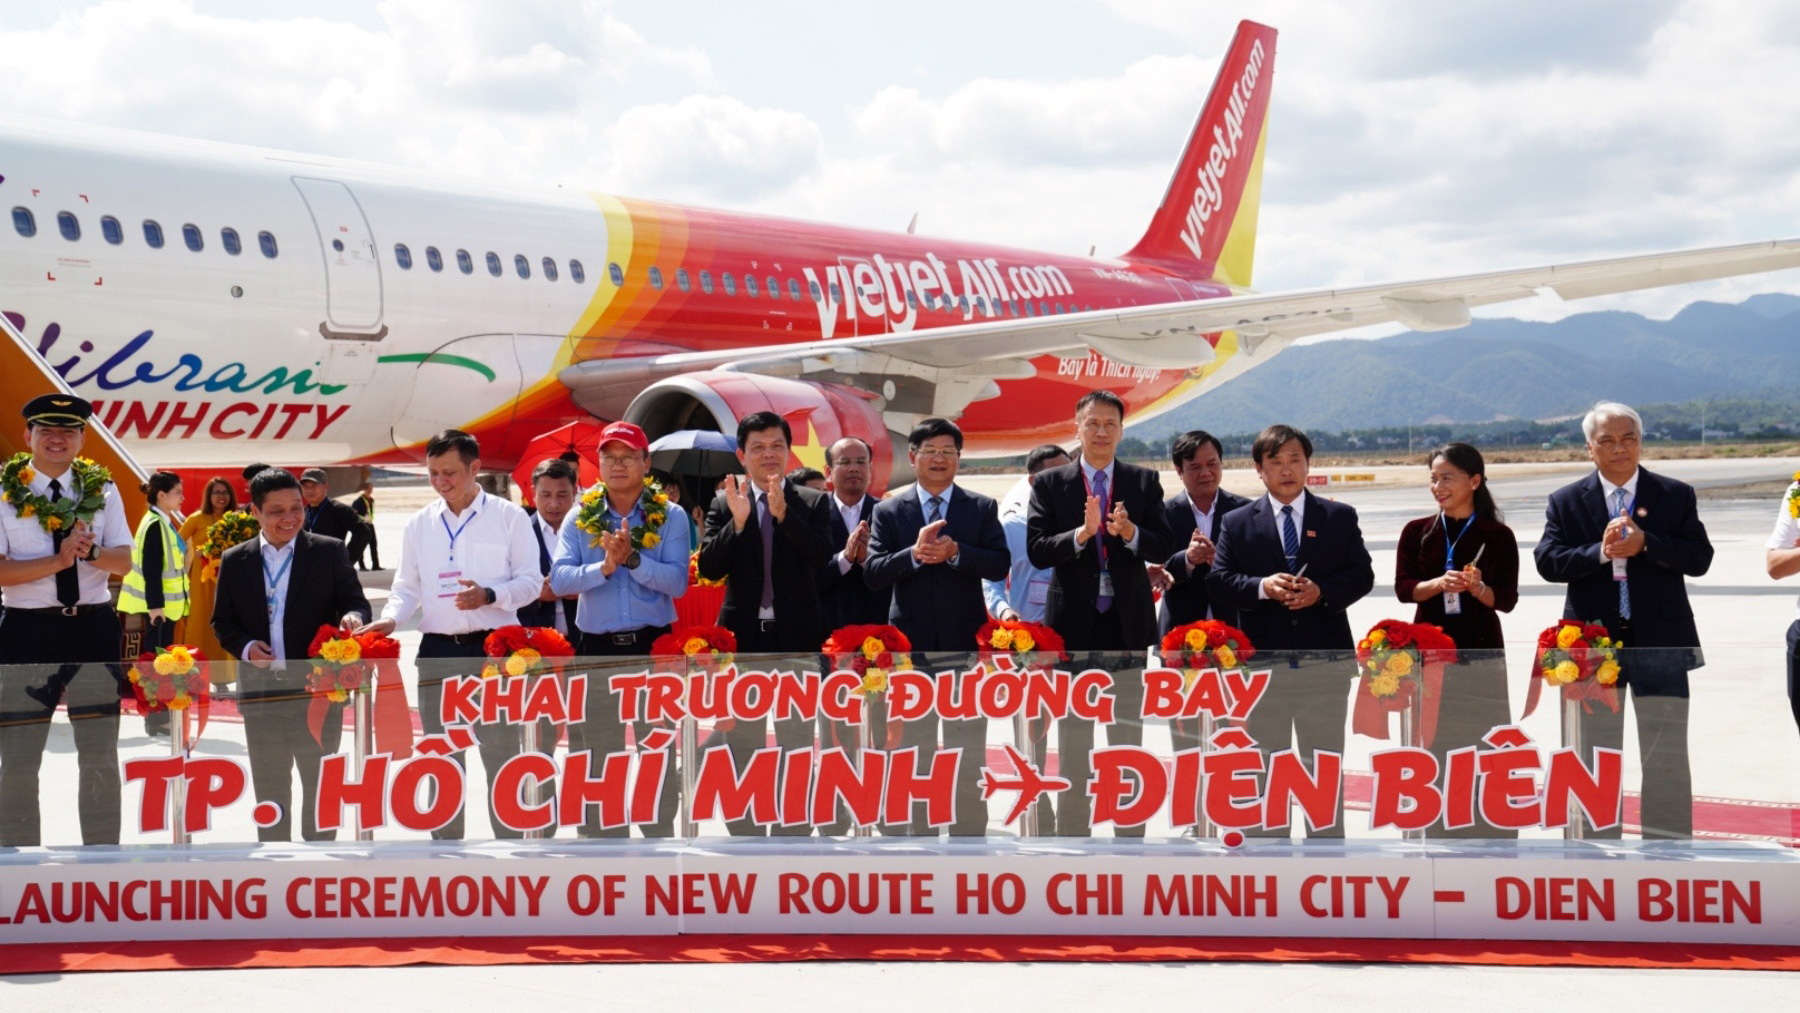 Vietjet chính thức khai trương đường bay TP Hồ Chí Minh - Điện Biên